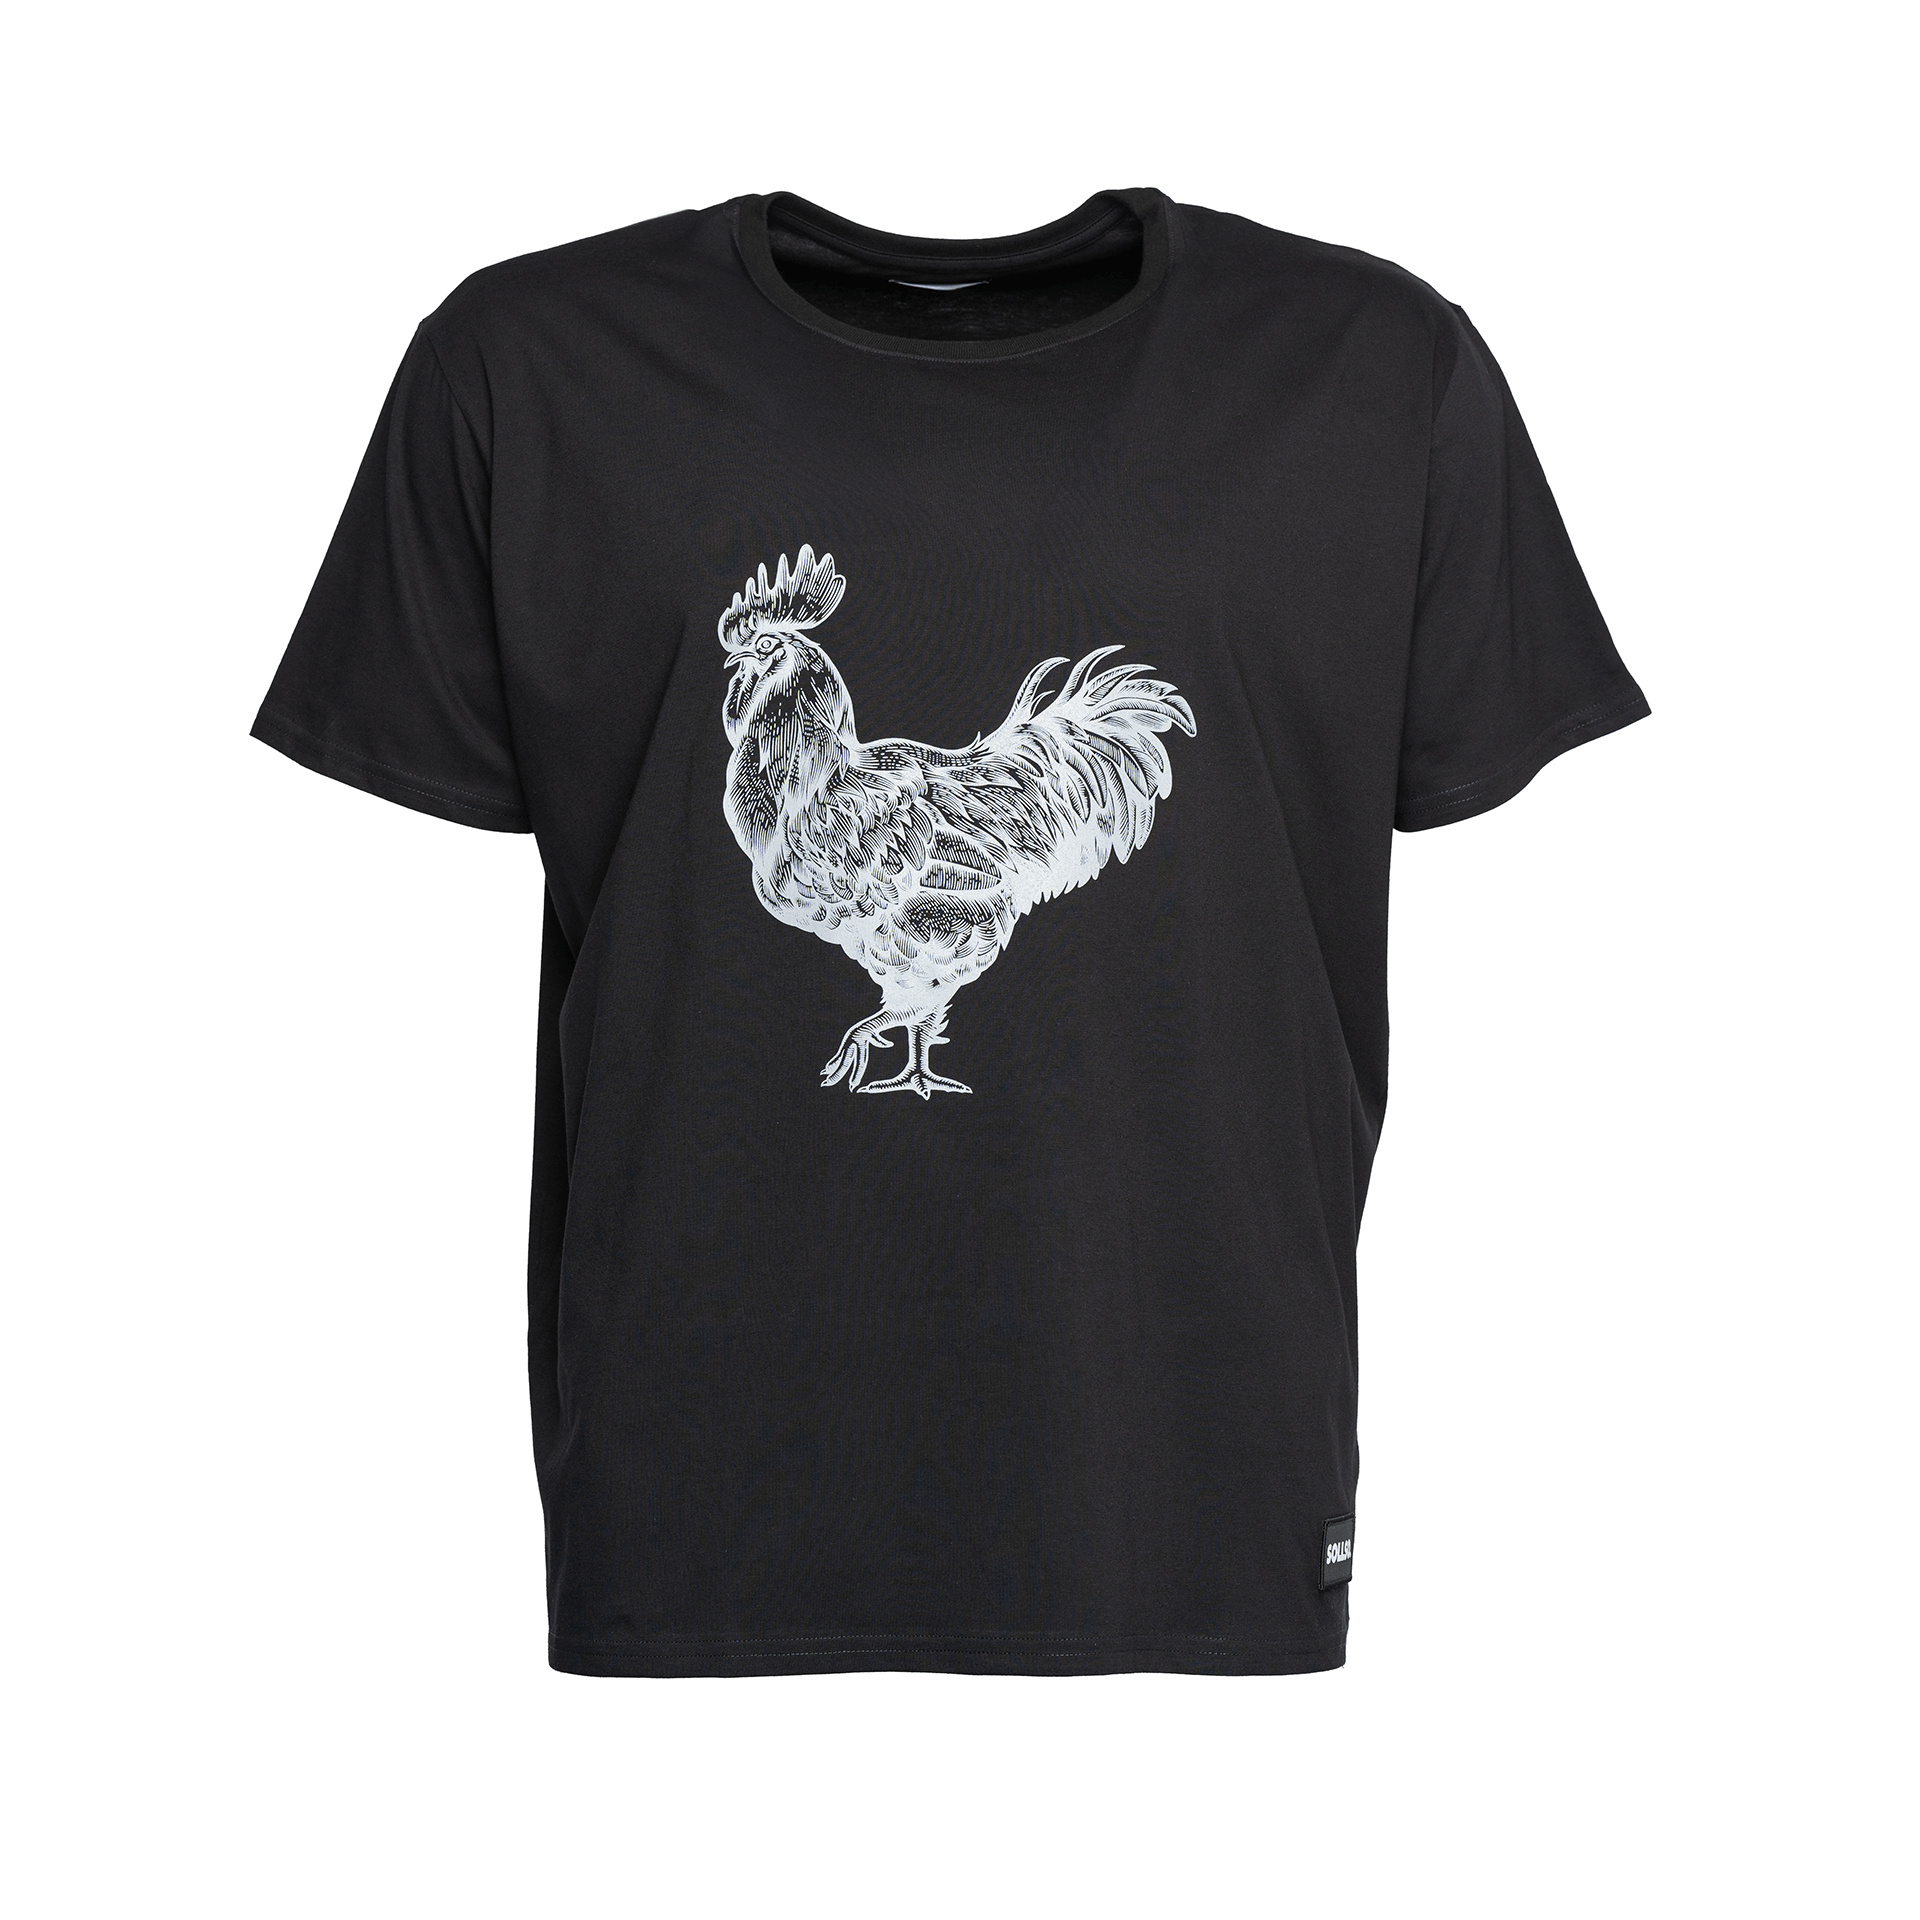 SOLLSO. T-Shirt "Rooster", Farbe Dark Black, Größe M